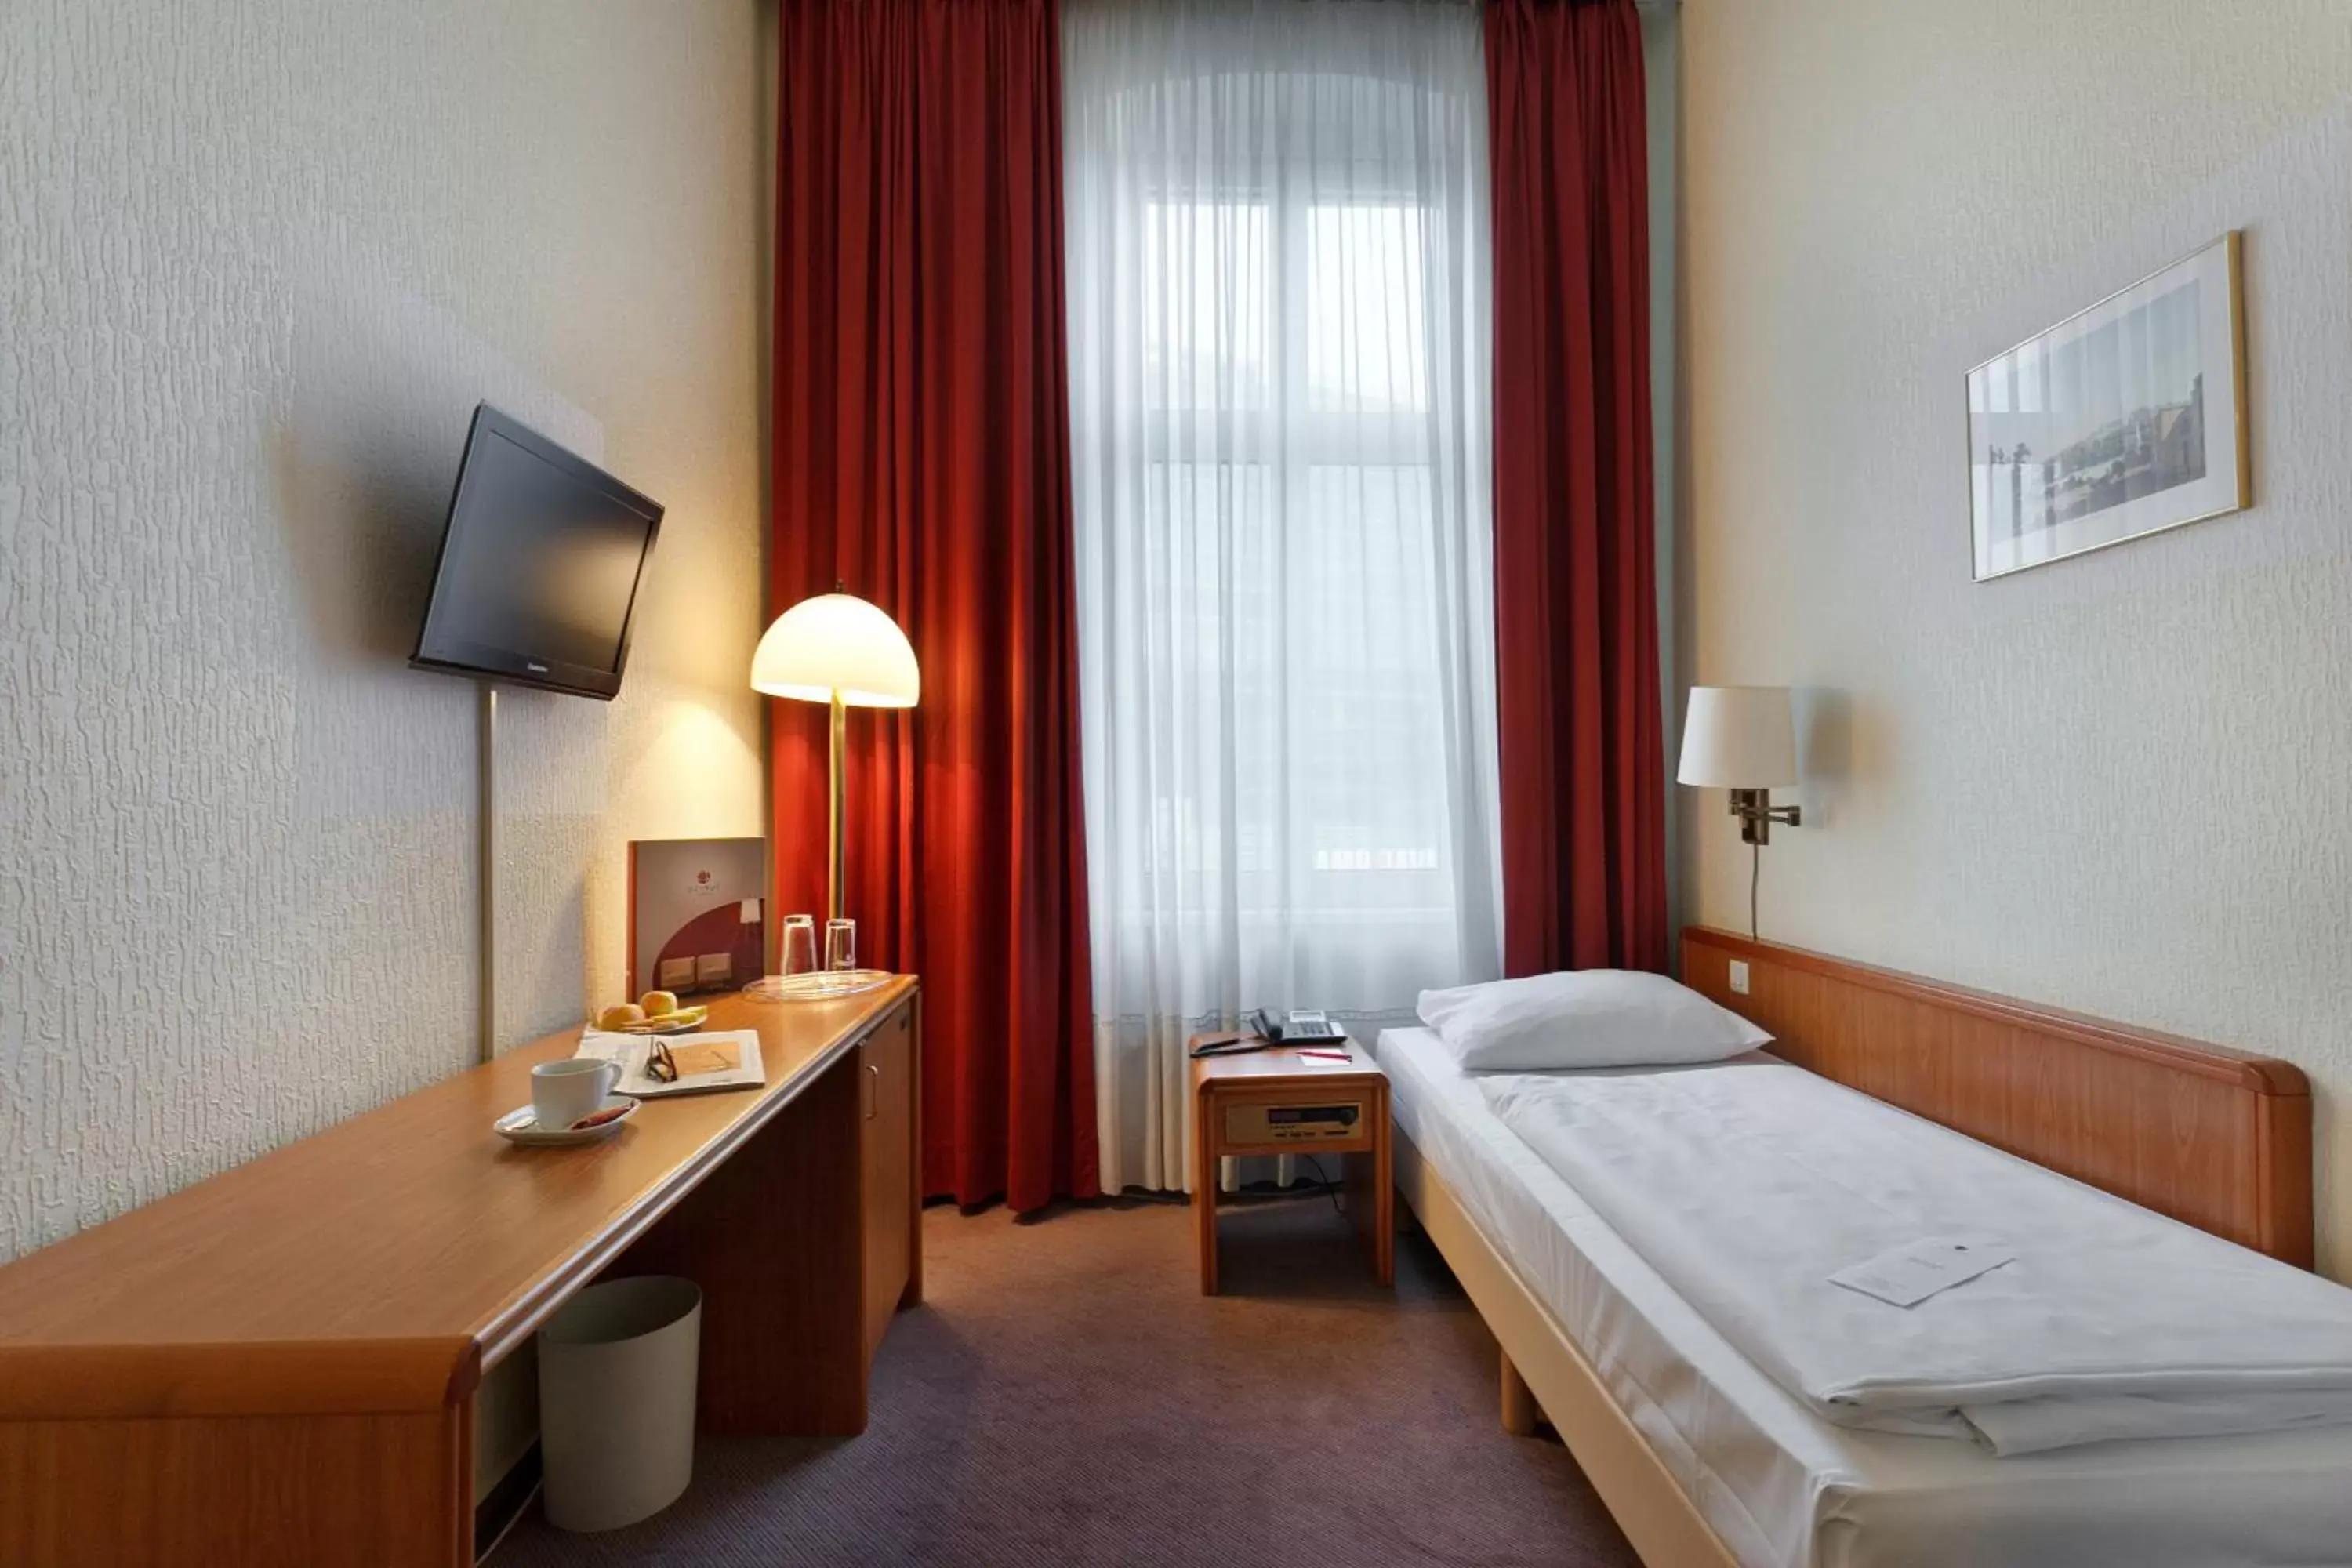 TV and multimedia, Bed in acom-Hotel Berlin Kurfürstendamm